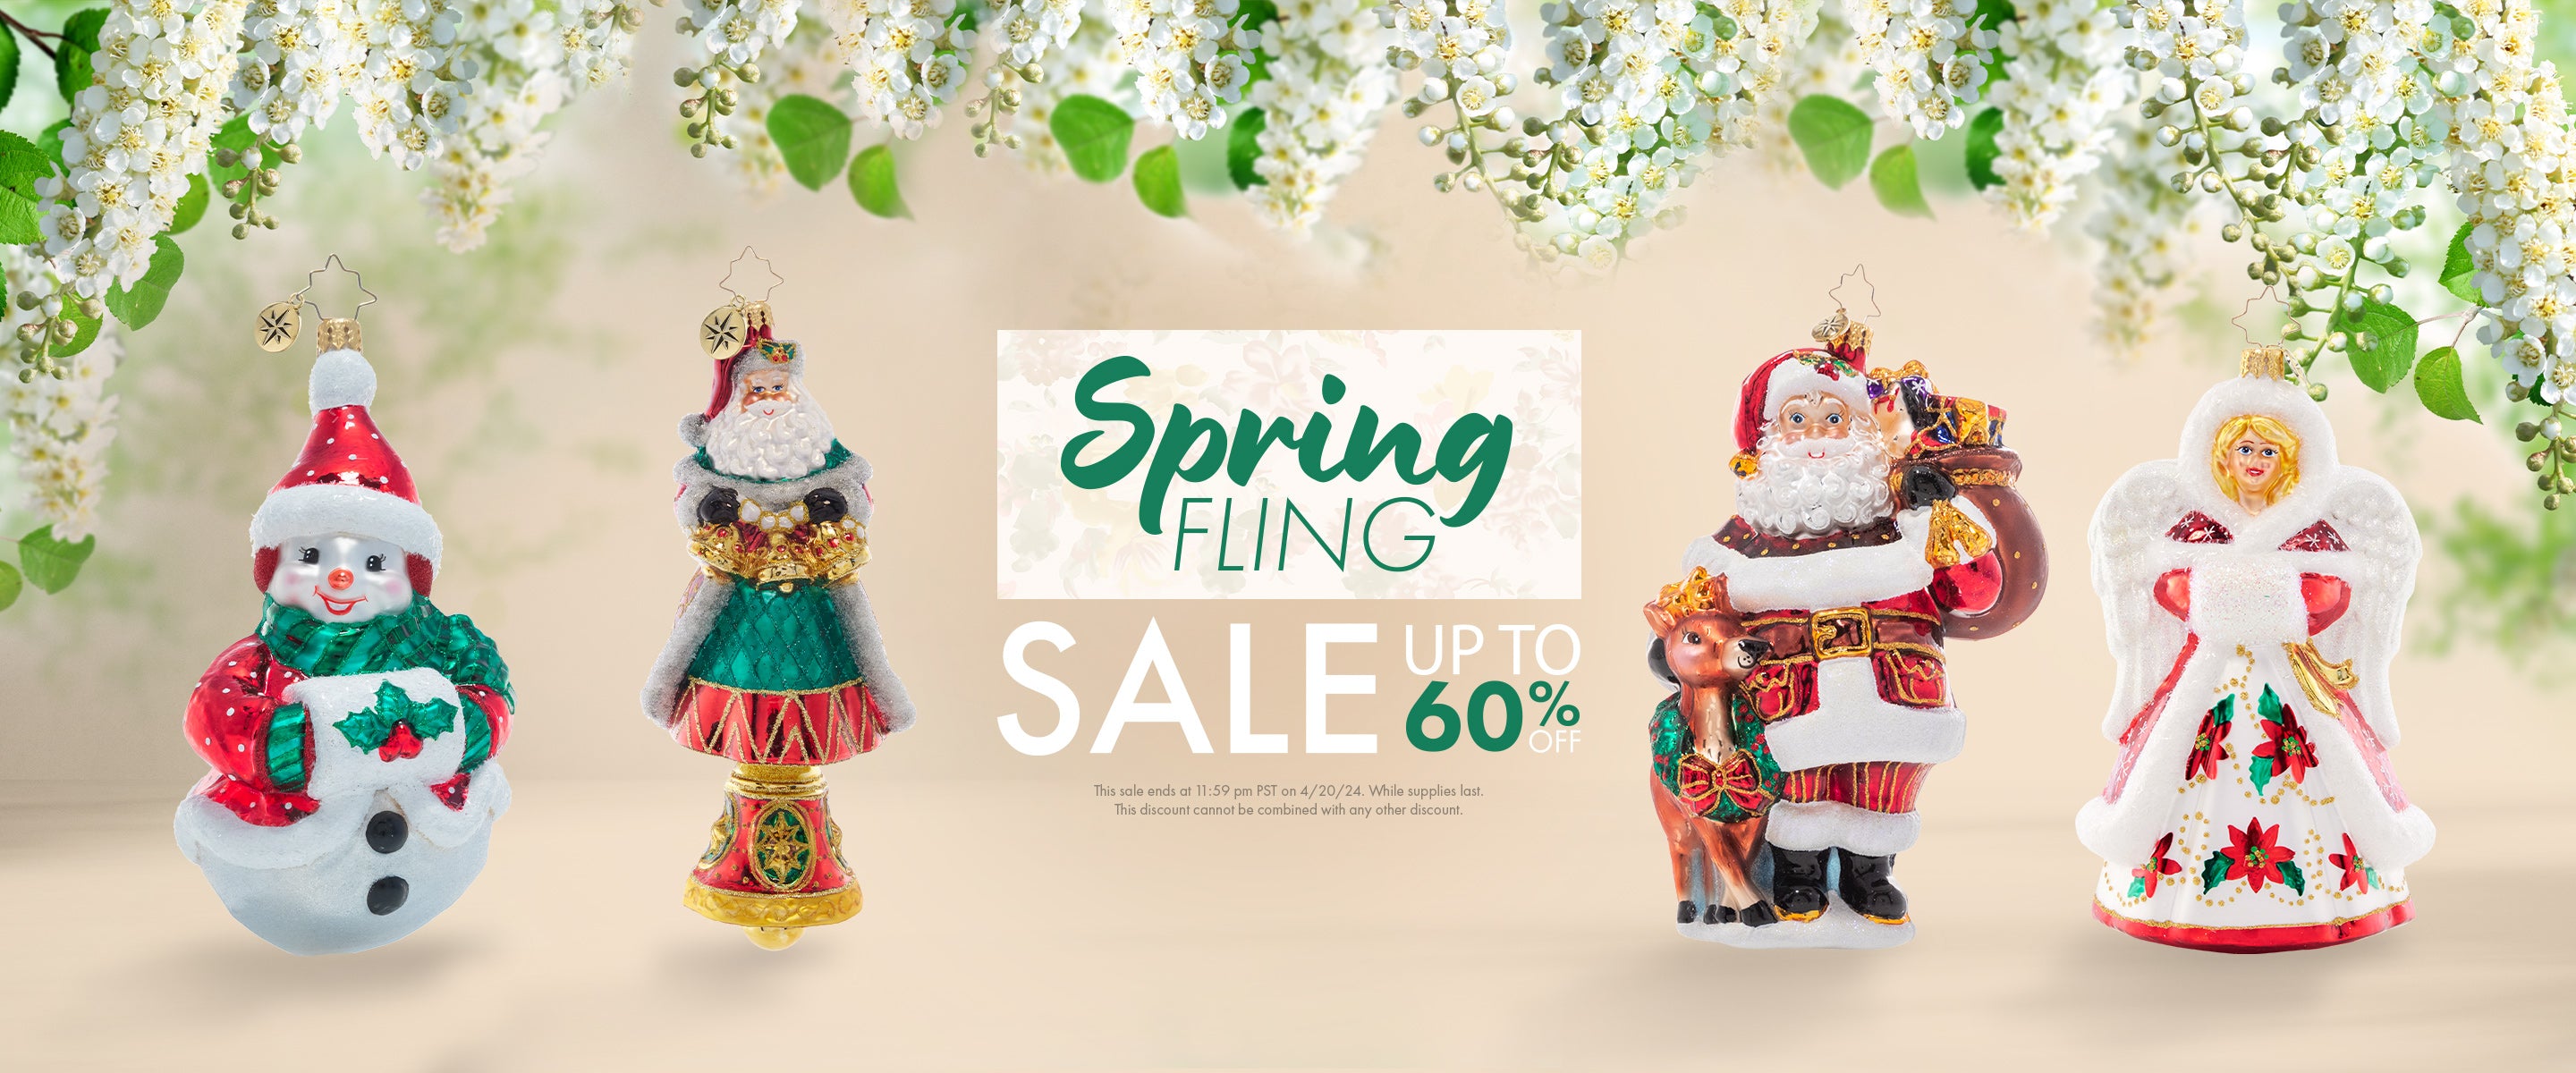 Christopher Radko Up to 60% Off Spring Fling Sale